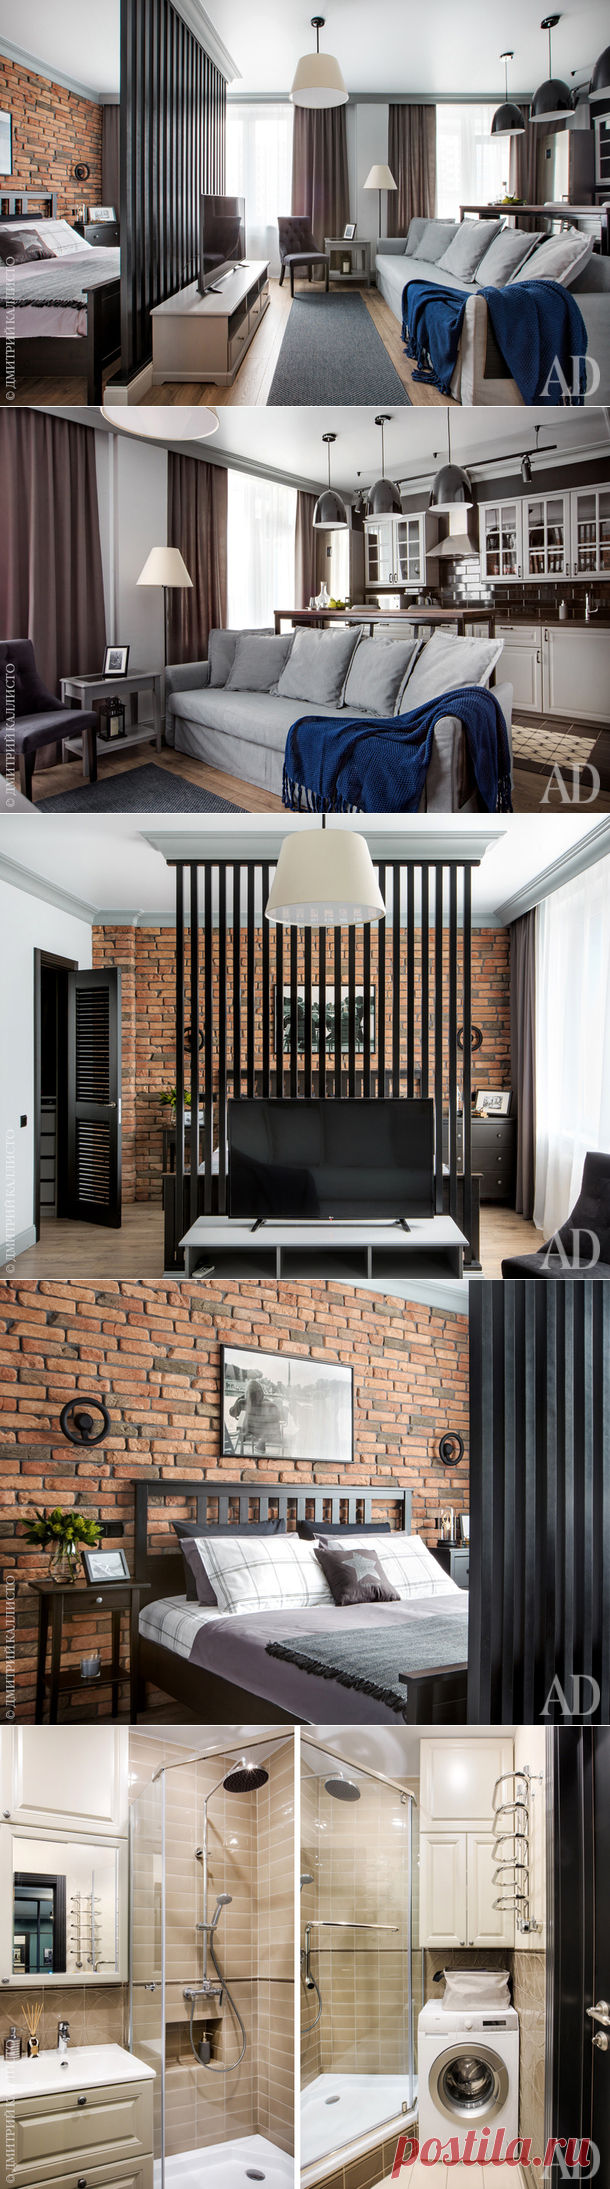 Квартира-студия в Екатеринбурге, 46 м² | Интерьеры в журнале AD | AD Magazine